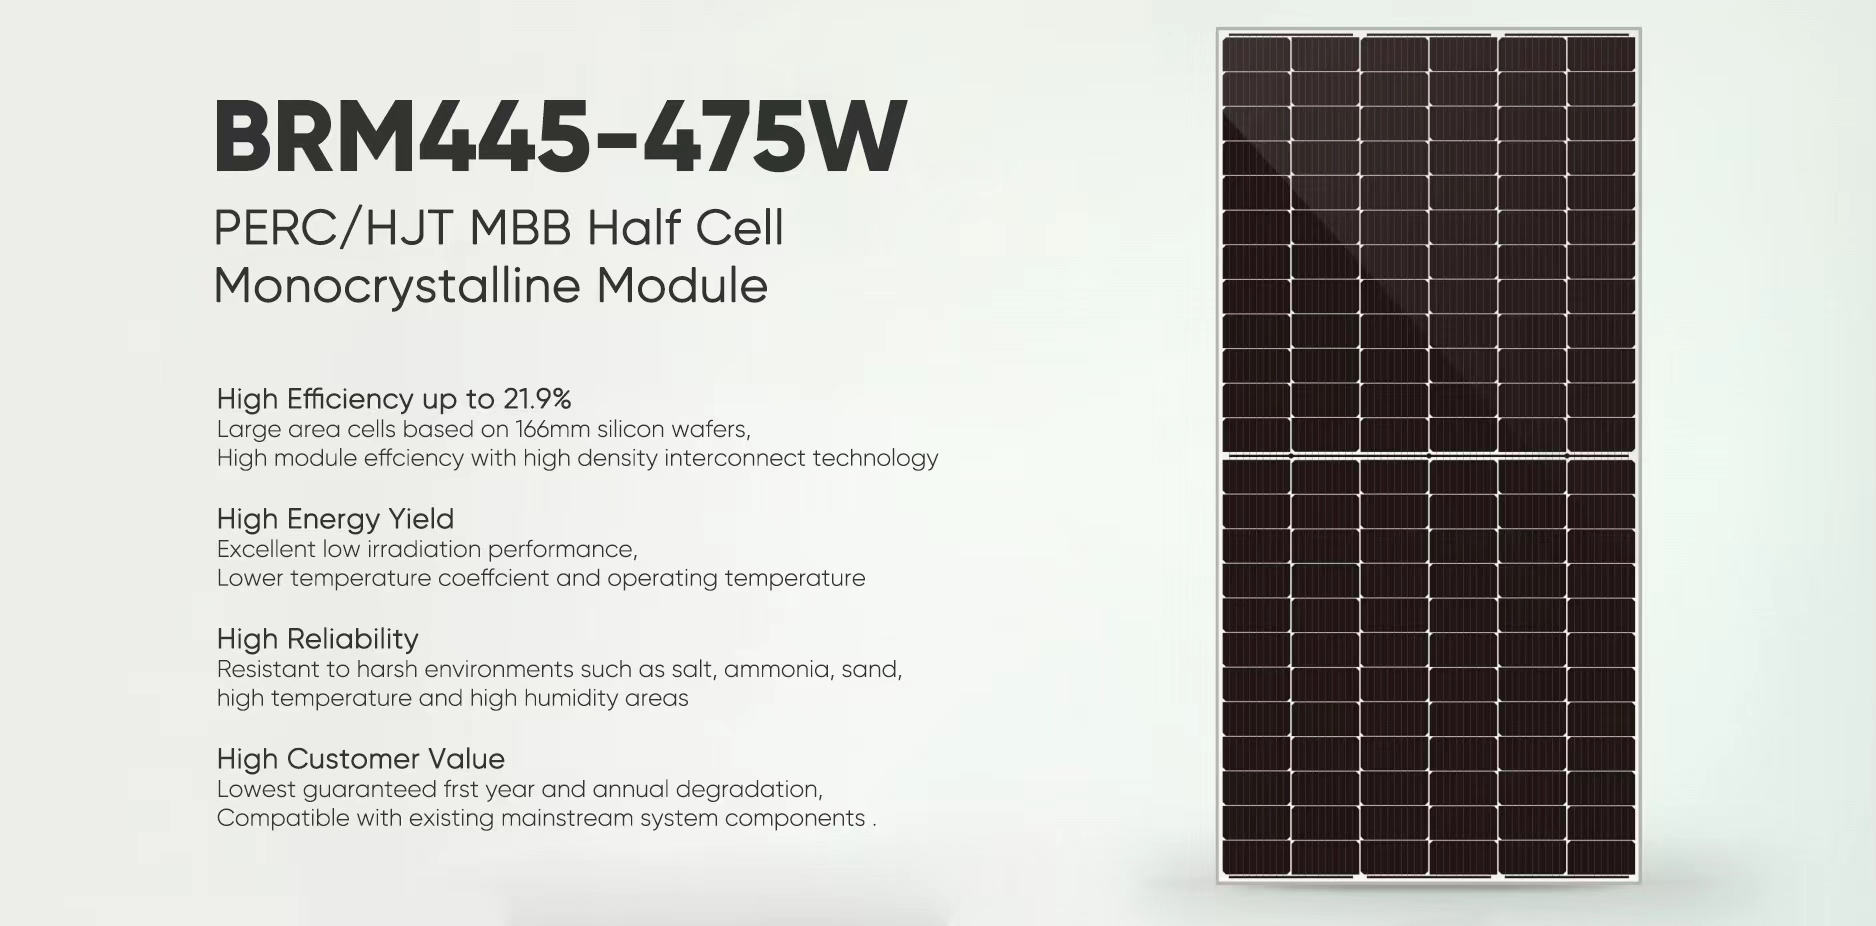 Постер за соларни панели од 445W-475W